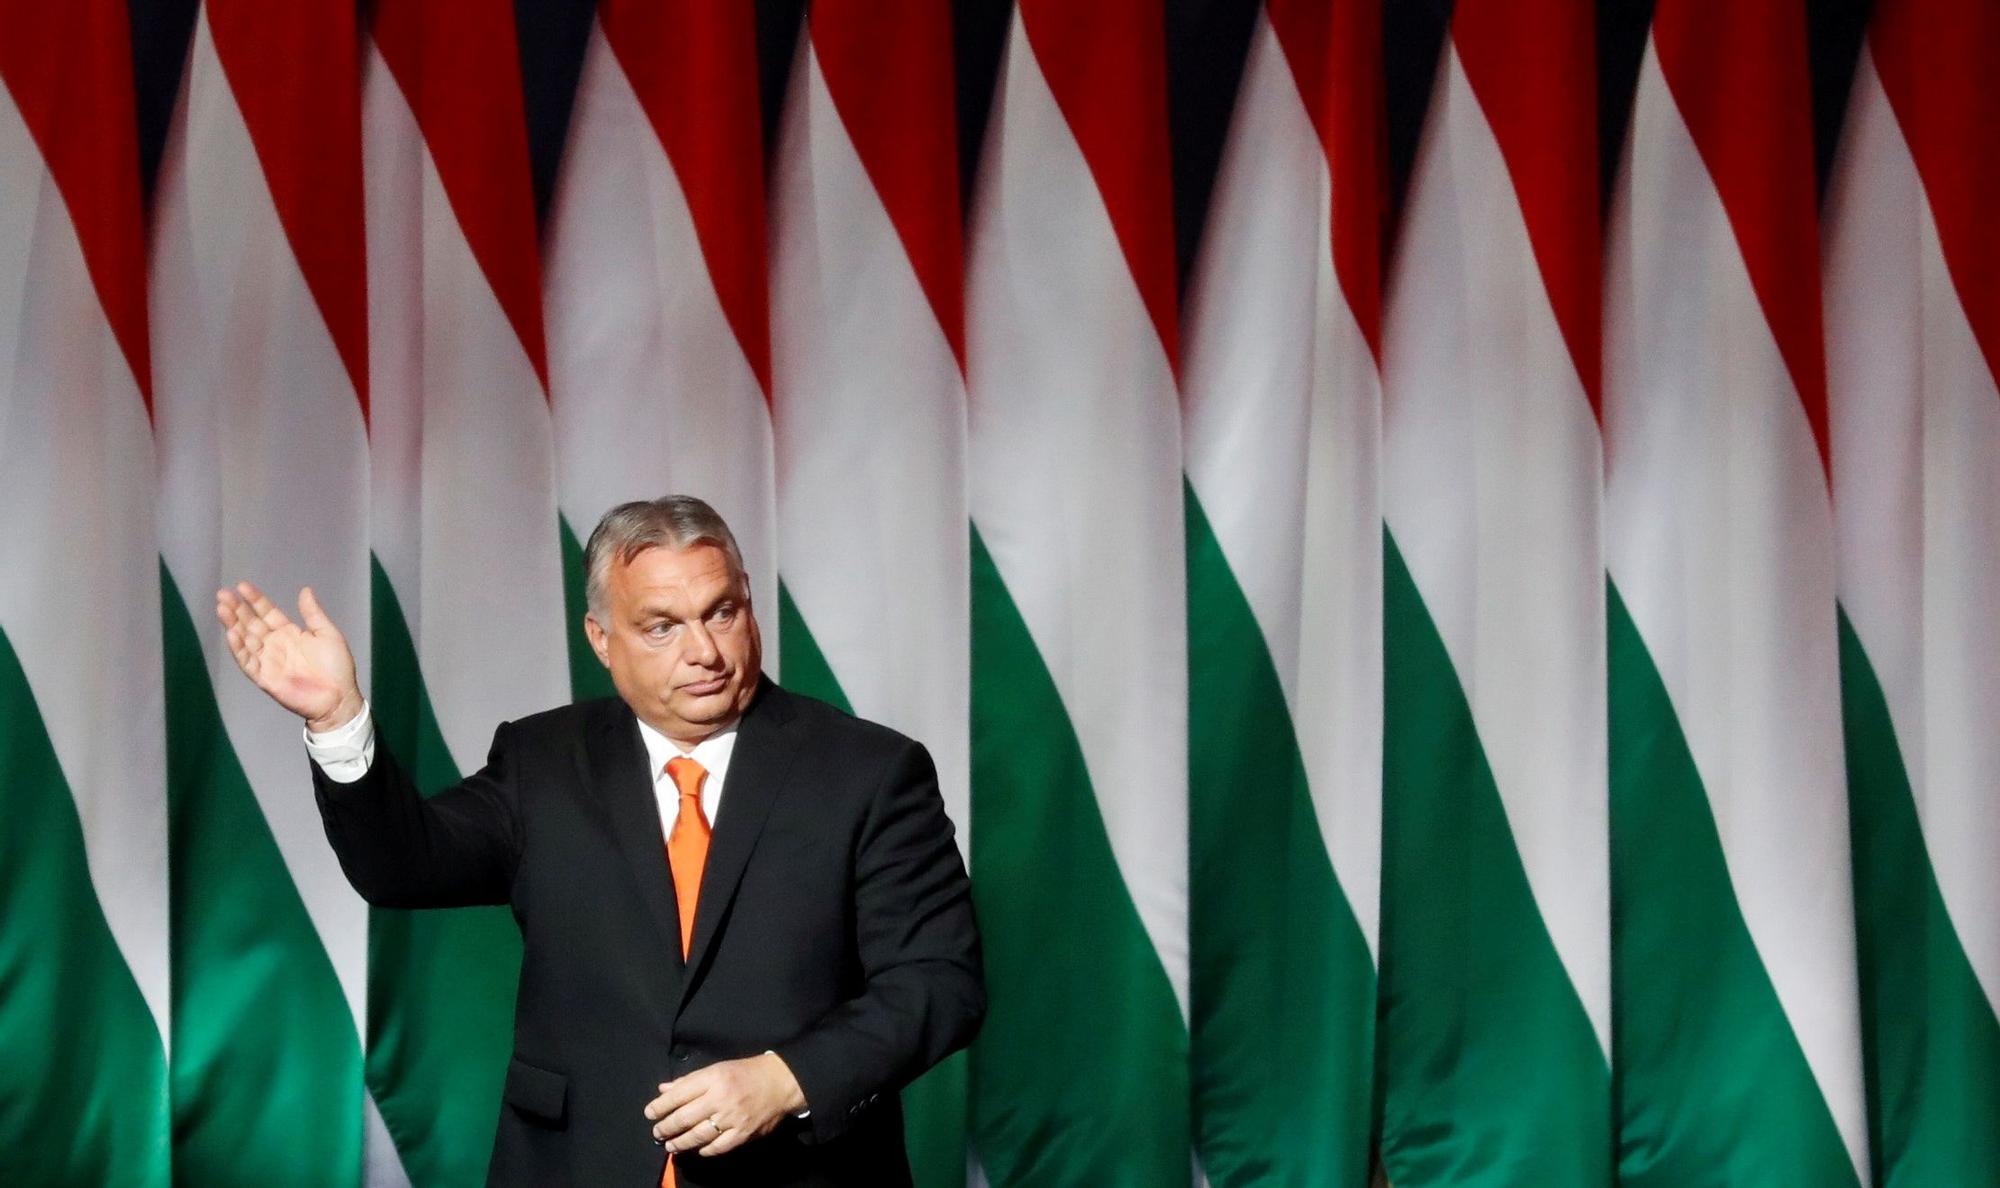 El primer ministro húngaro, Viktor Orbán, saluda durante un acto de su partido en Budapest